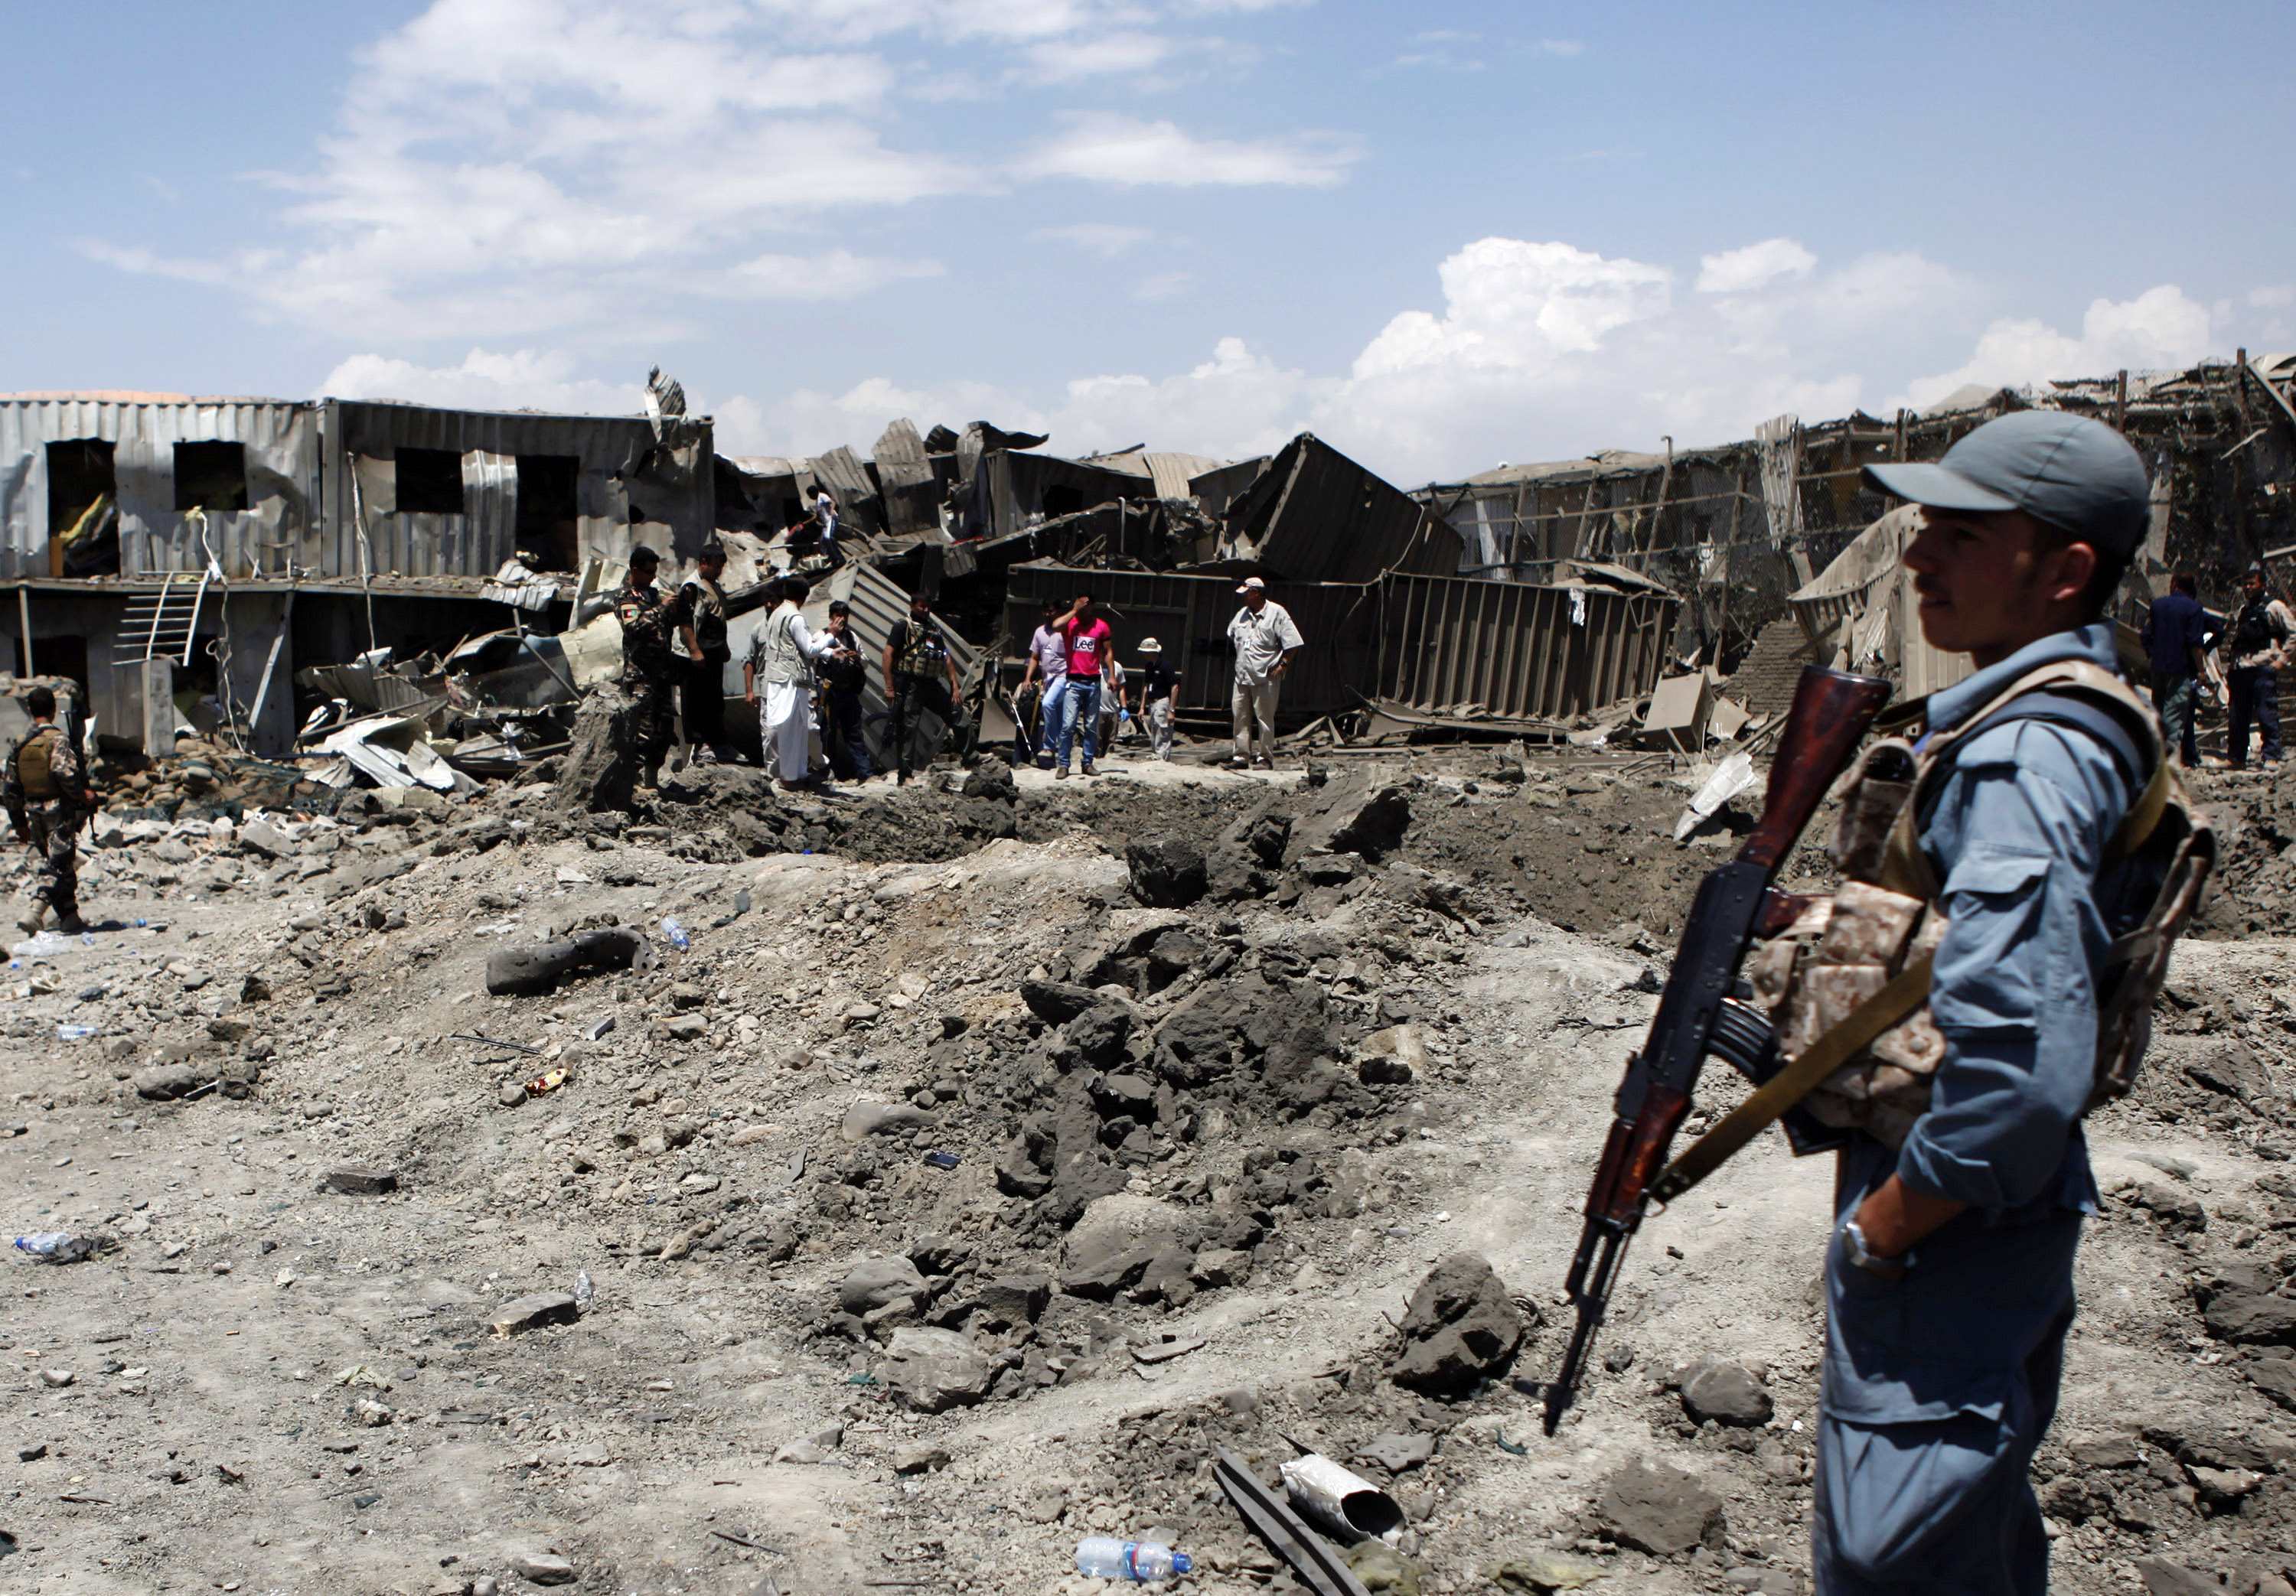 Αφγανιστάν: Τουλάχιστον 17 νεκροί από έκρηξη βόμβας